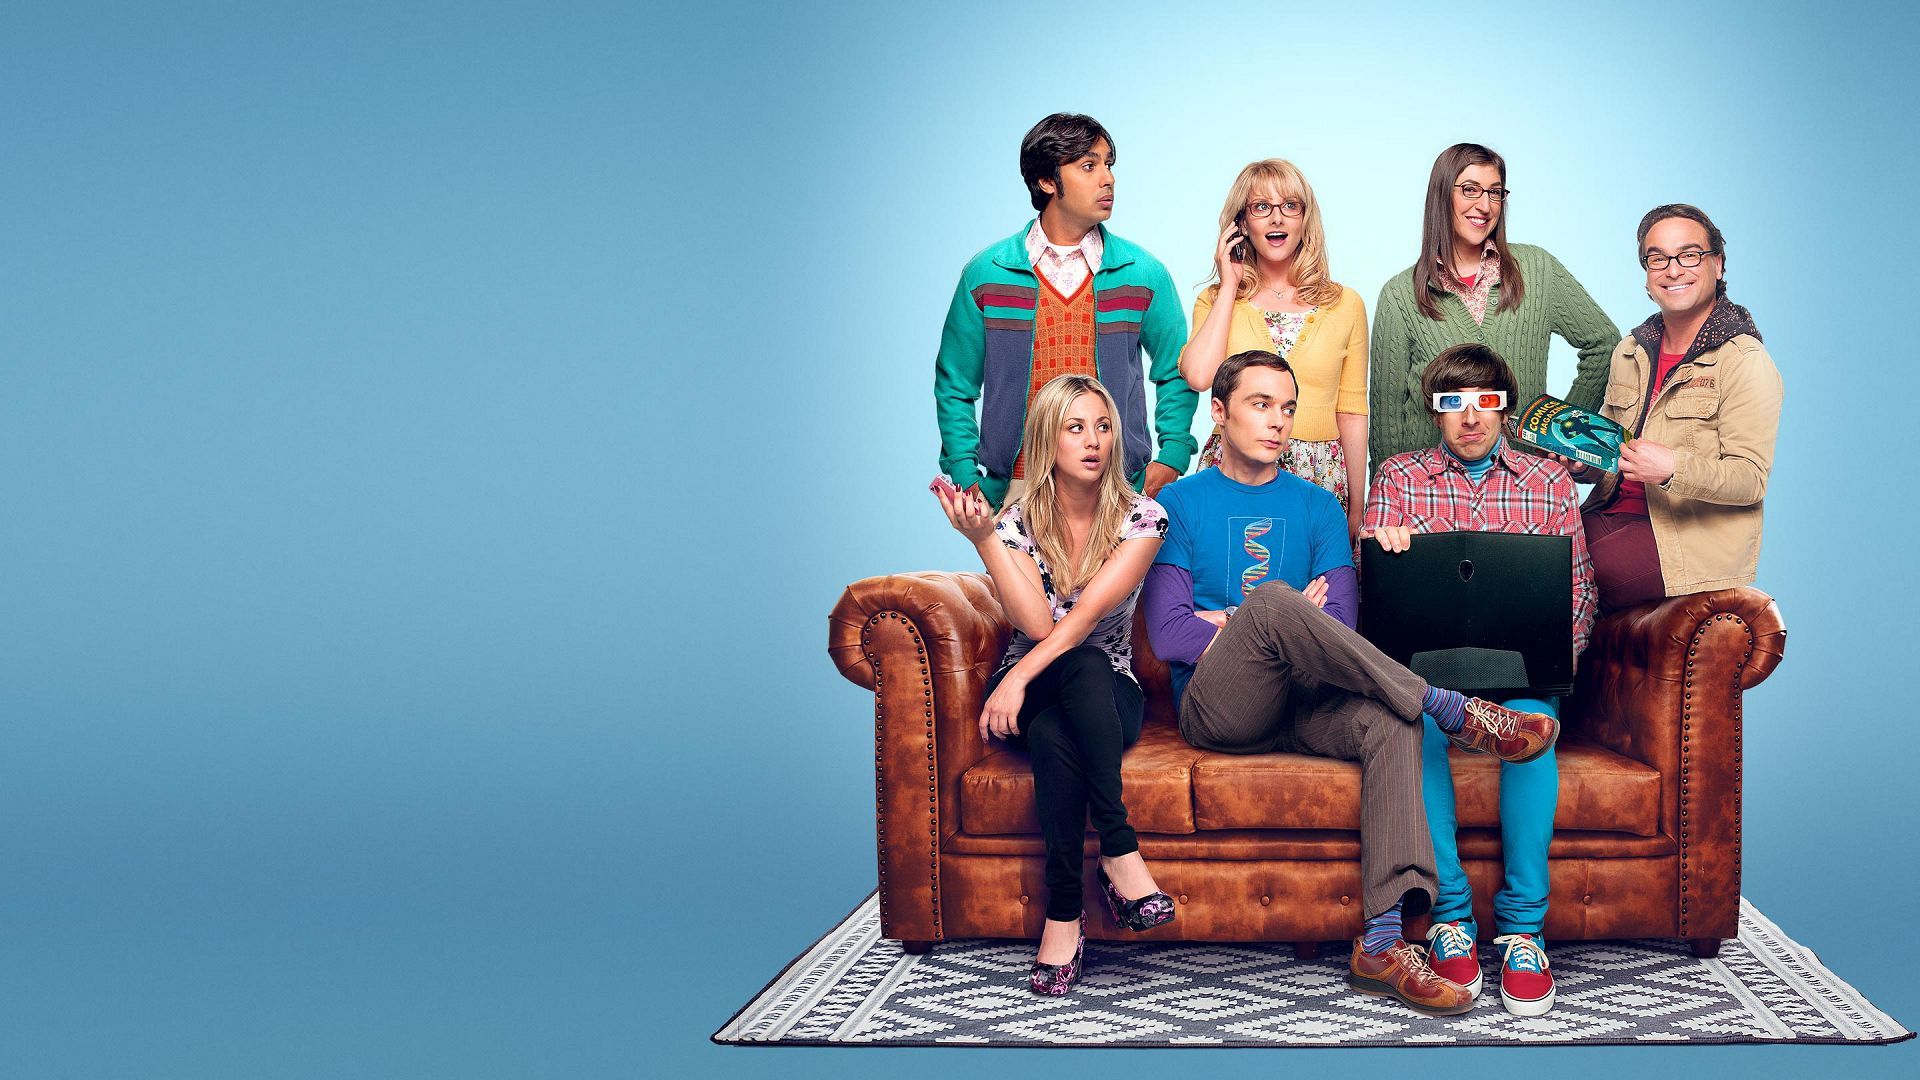 The Big Bang Theory 2019 Wallpaper